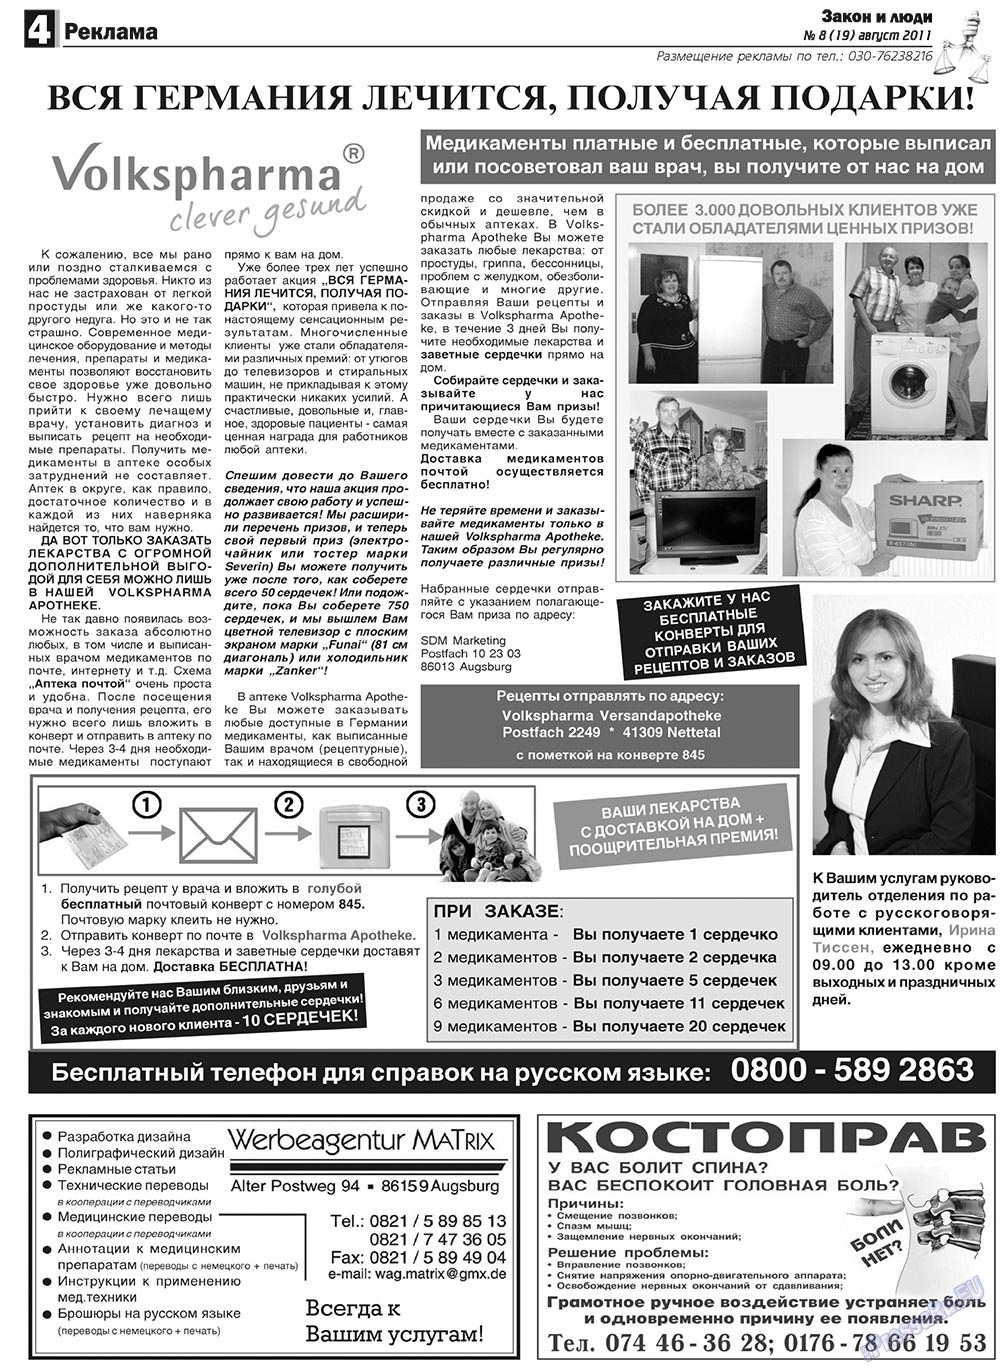 Закон и люди, газета. 2011 №8 стр.4